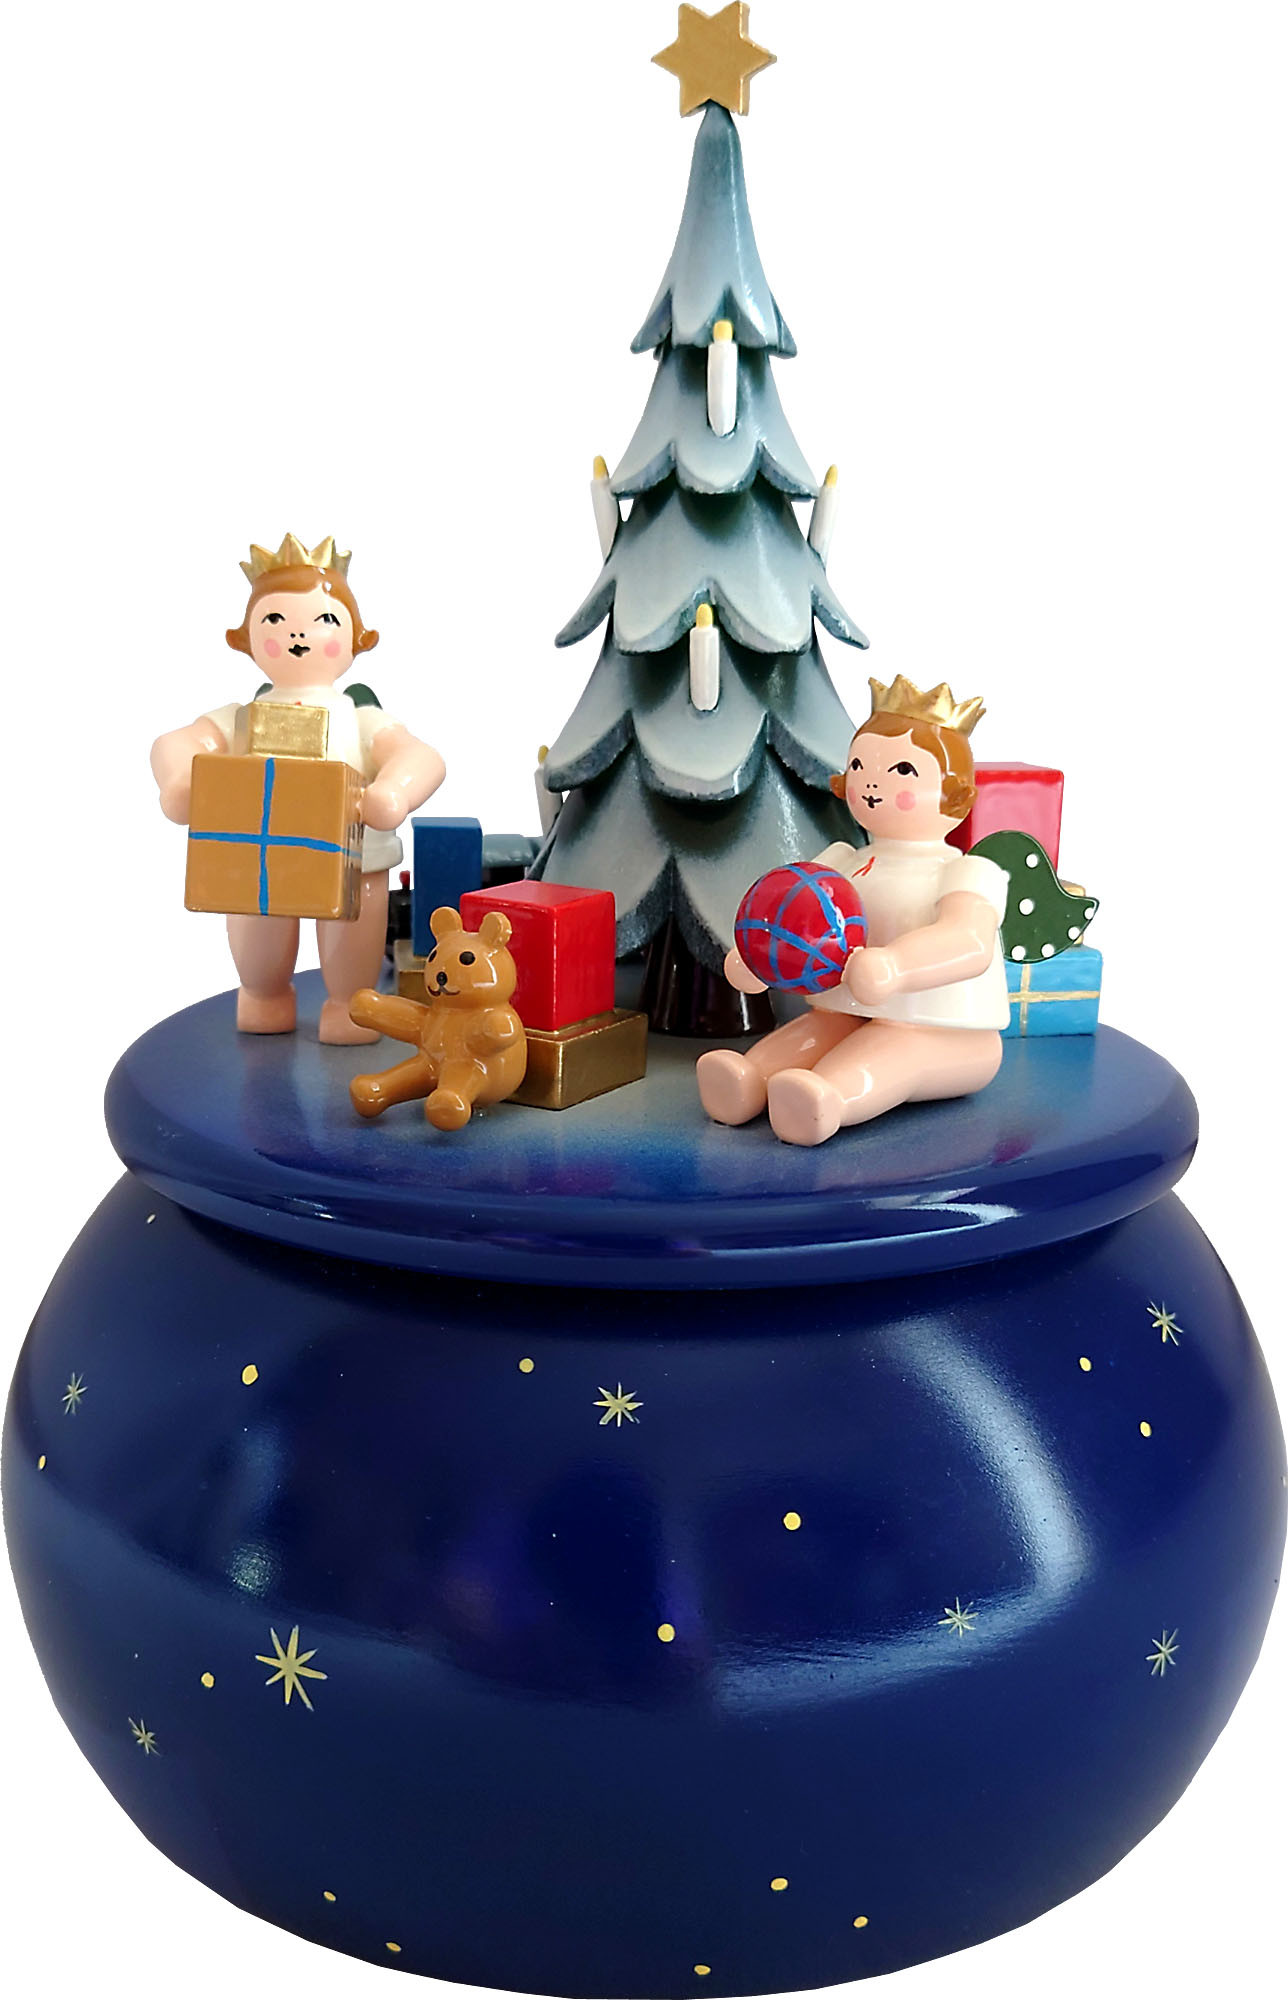 Ellmann Spieldose - Engel am Weihnachtsbaum, blau mit Sternen